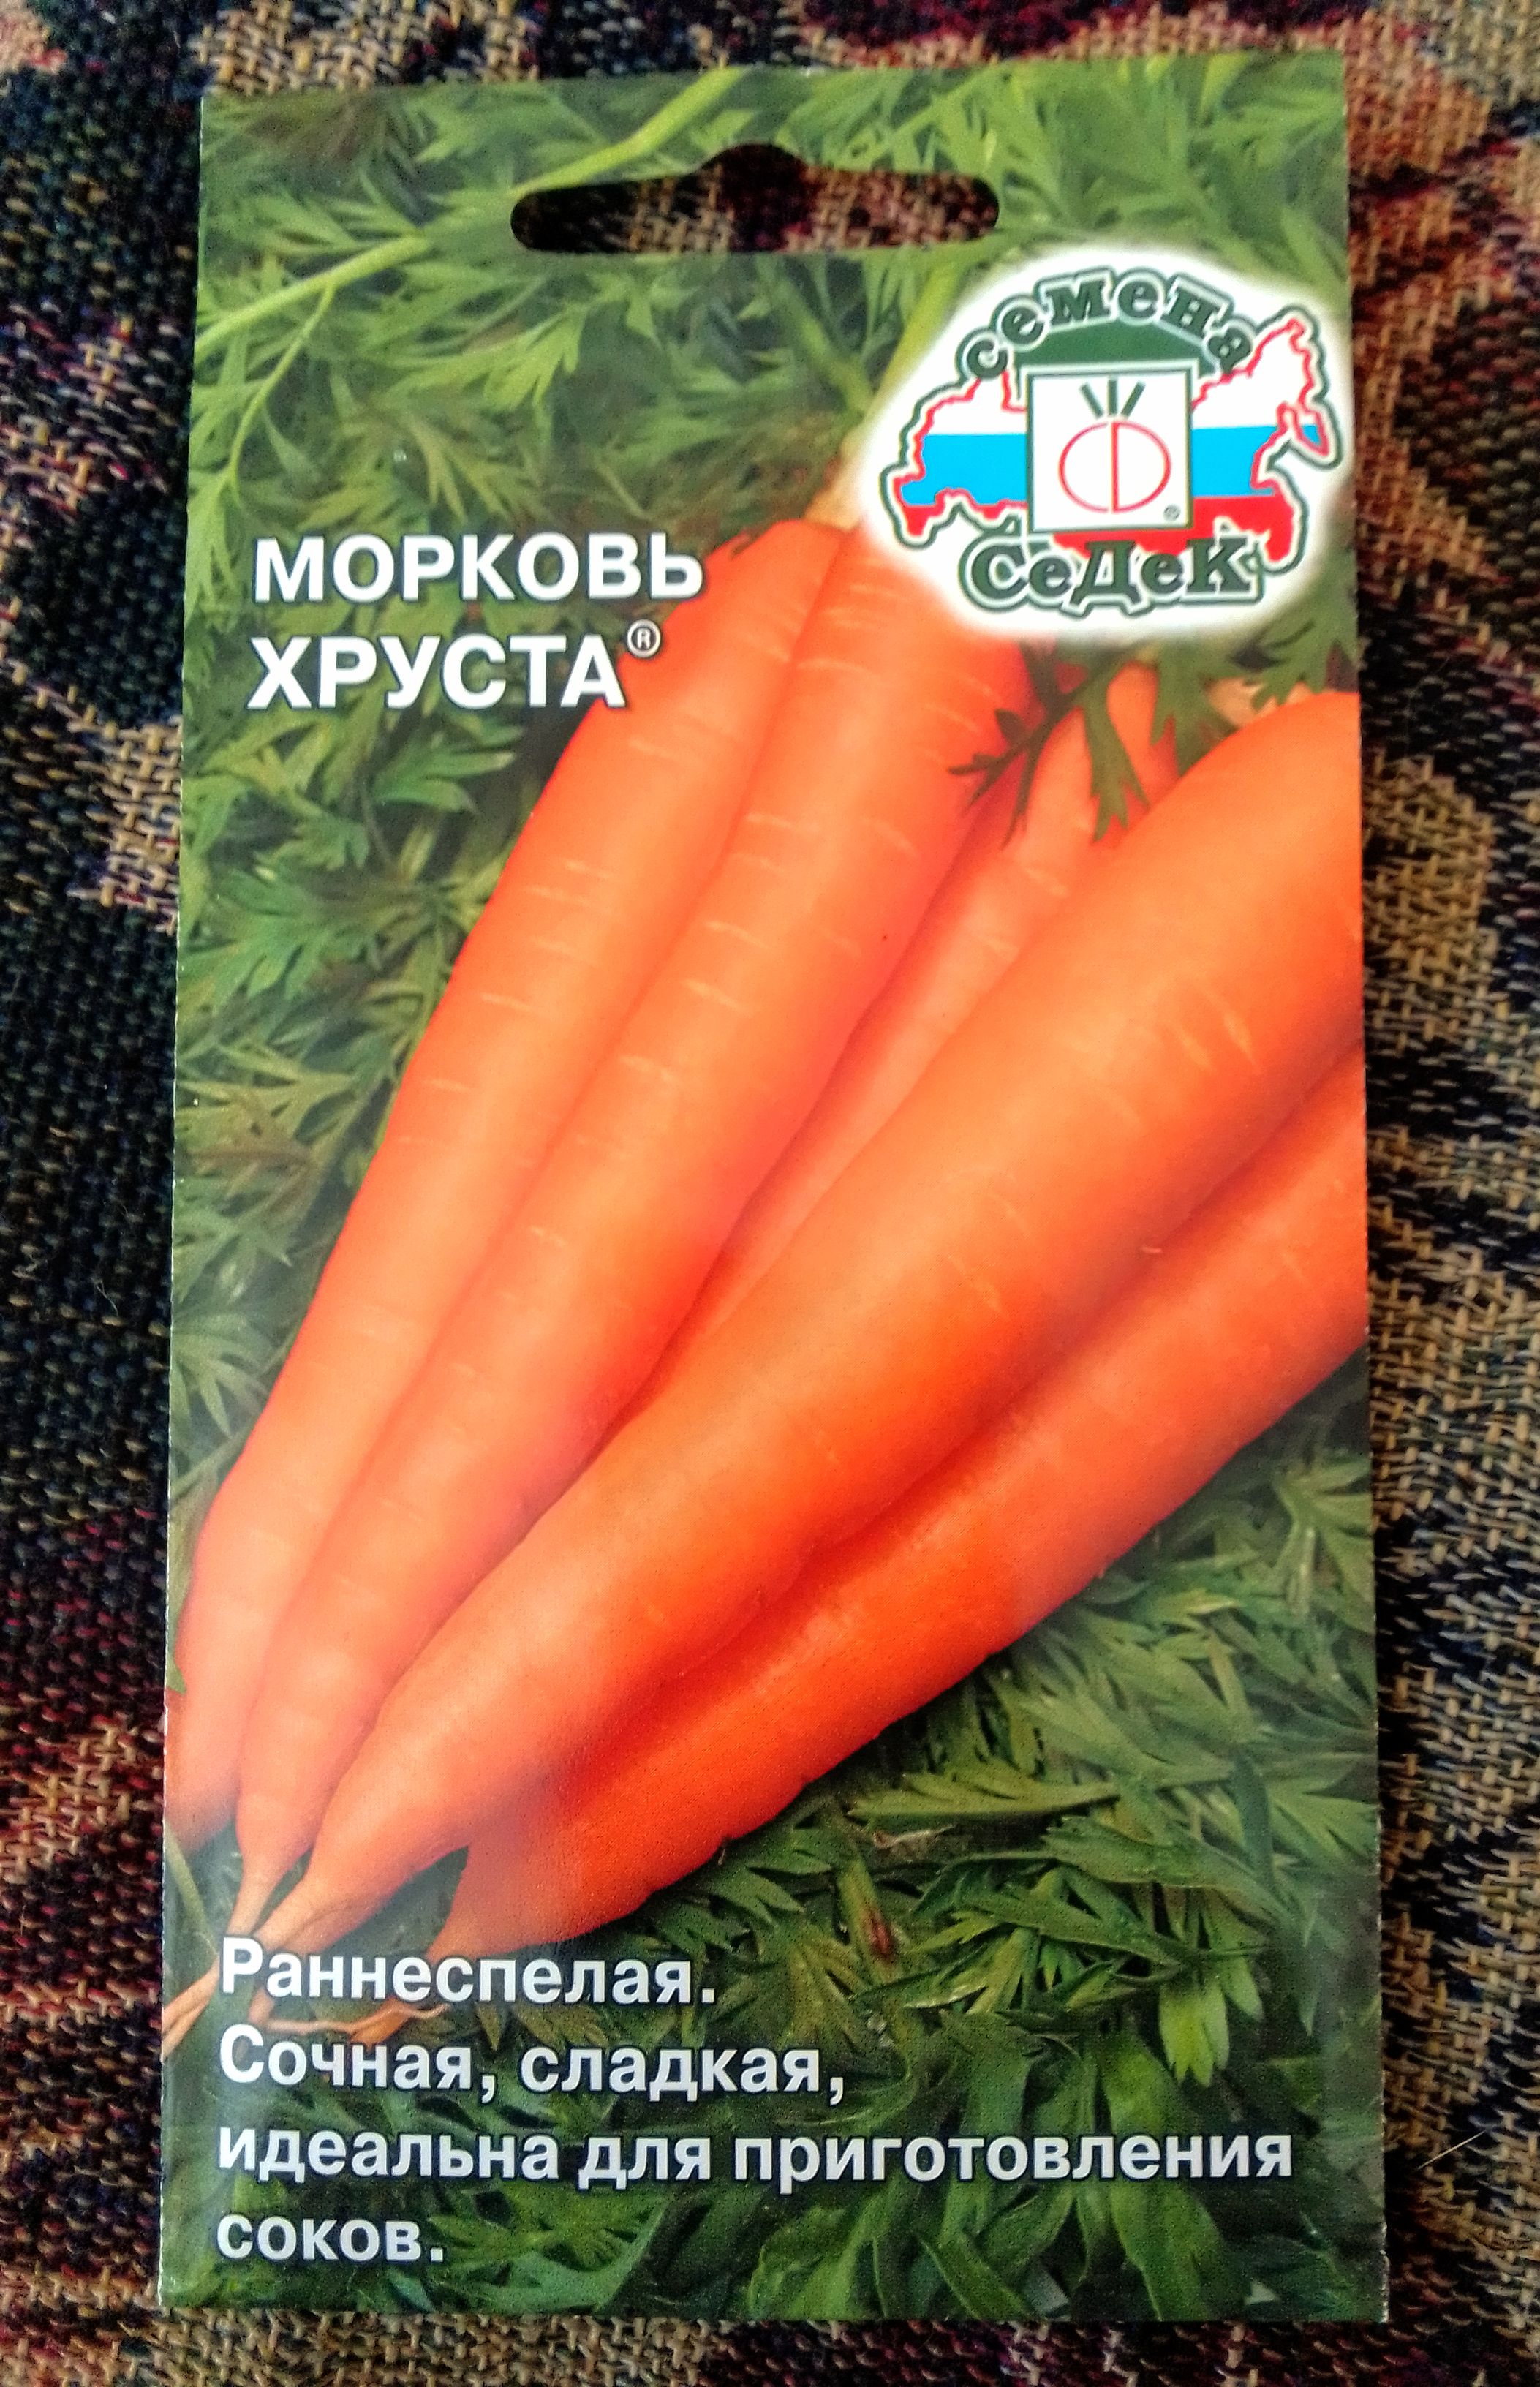 Семена морковь СеДеК Хруста 16178 1 уп. - отзывы покупателей на Мегамаркет